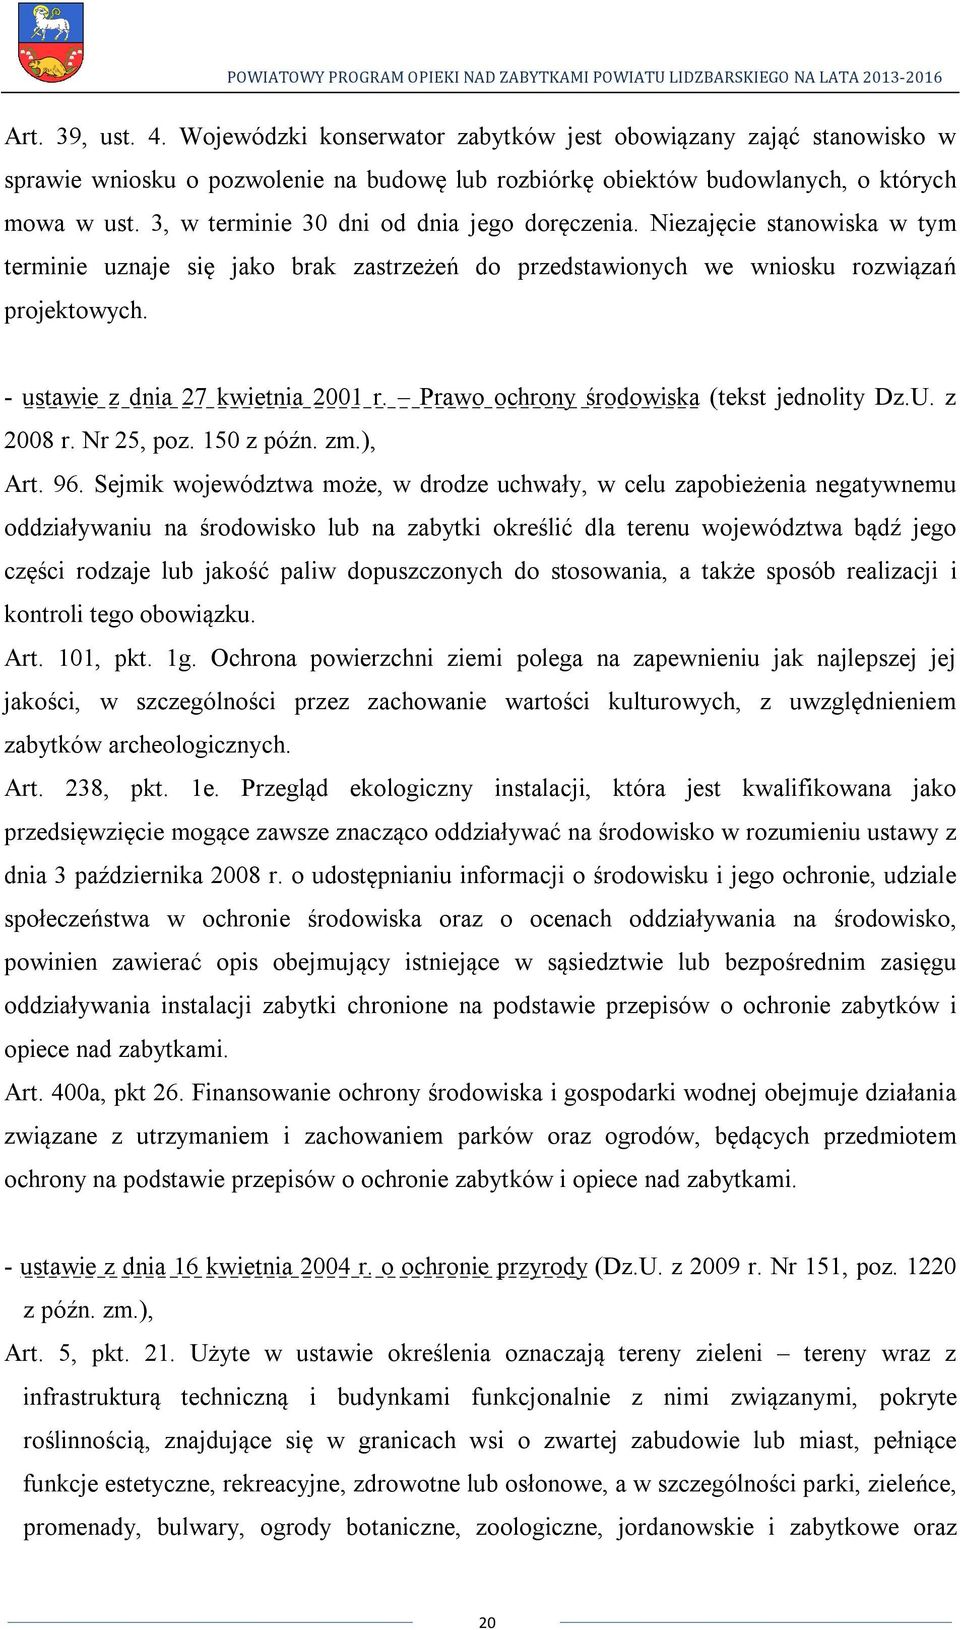 - ustawie z dnia 27 kwietnia 2001 r. Prawo ochrony środowiska (tekst jednolity Dz.U. z 2008 r. Nr 25, poz. 150 z późn. zm.), Art. 96.